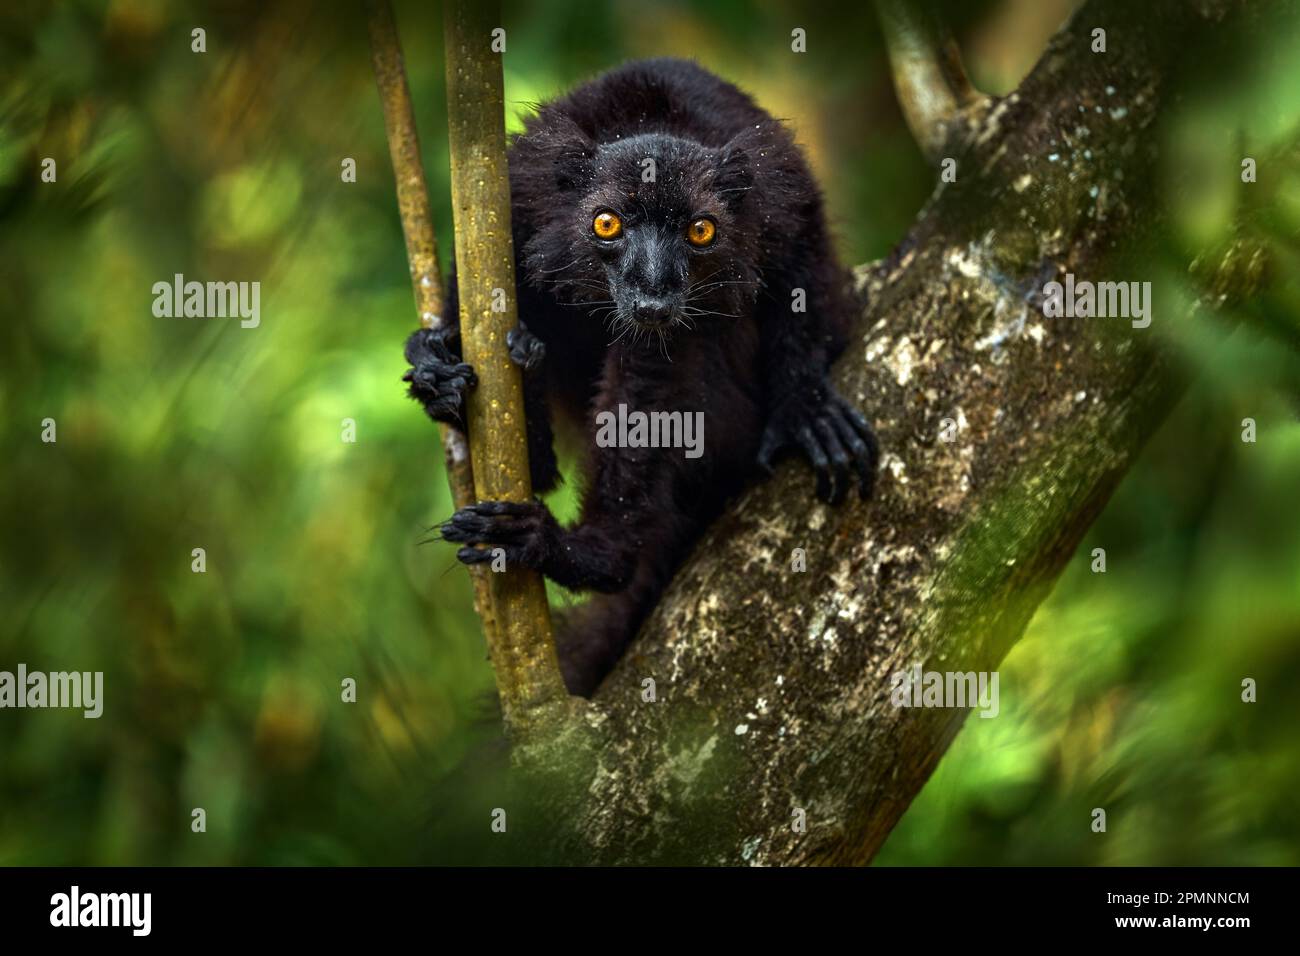 Lemure nero, Eulemur macaco, ritratto con dettagli facciali e occhio giallo. Parco Nazionale Andasibe - Mantadia in Madagascar. Scimmia rossa marrone sull'albero, nat Foto Stock